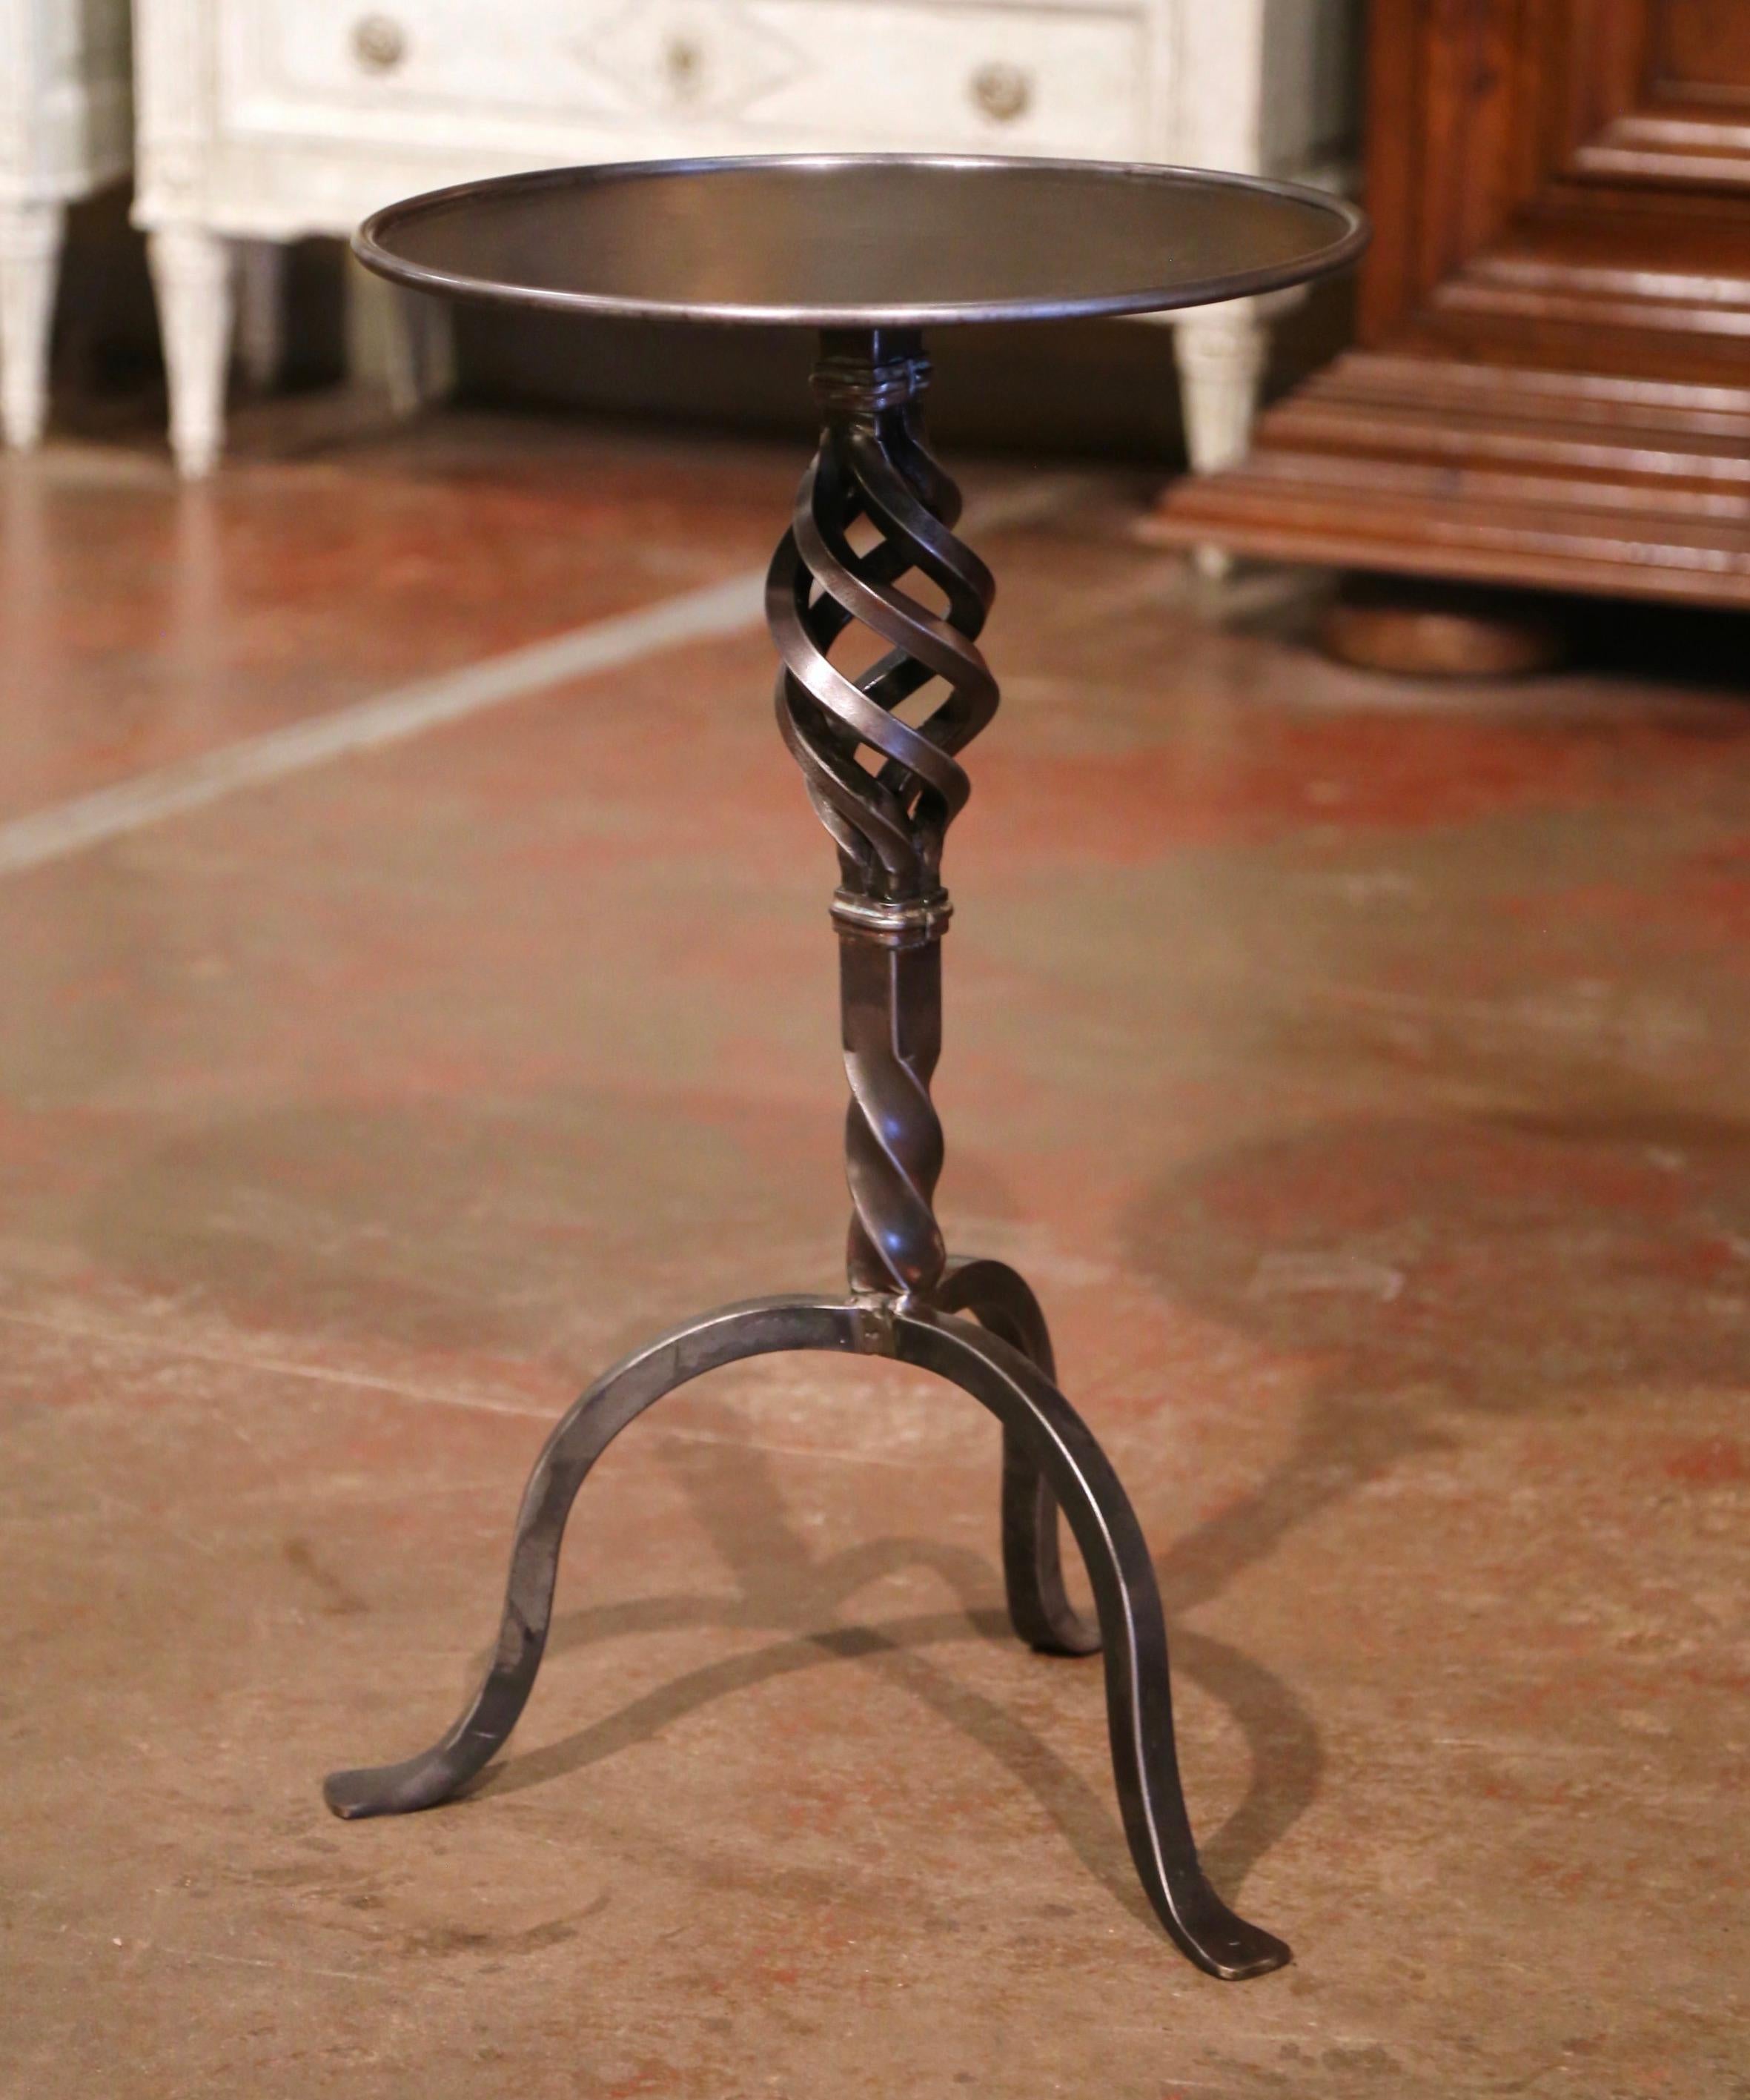 Dieser elegante, antike Sockeltisch im gotischen Stil wurde um 1920 in Südfrankreich hergestellt. Der komplizierte Martini-Tisch besteht aus einem geschmiedeten zentralen Sockel, der mit einem gedrehten Knauf über einem gedrehten Dekor verziert ist,